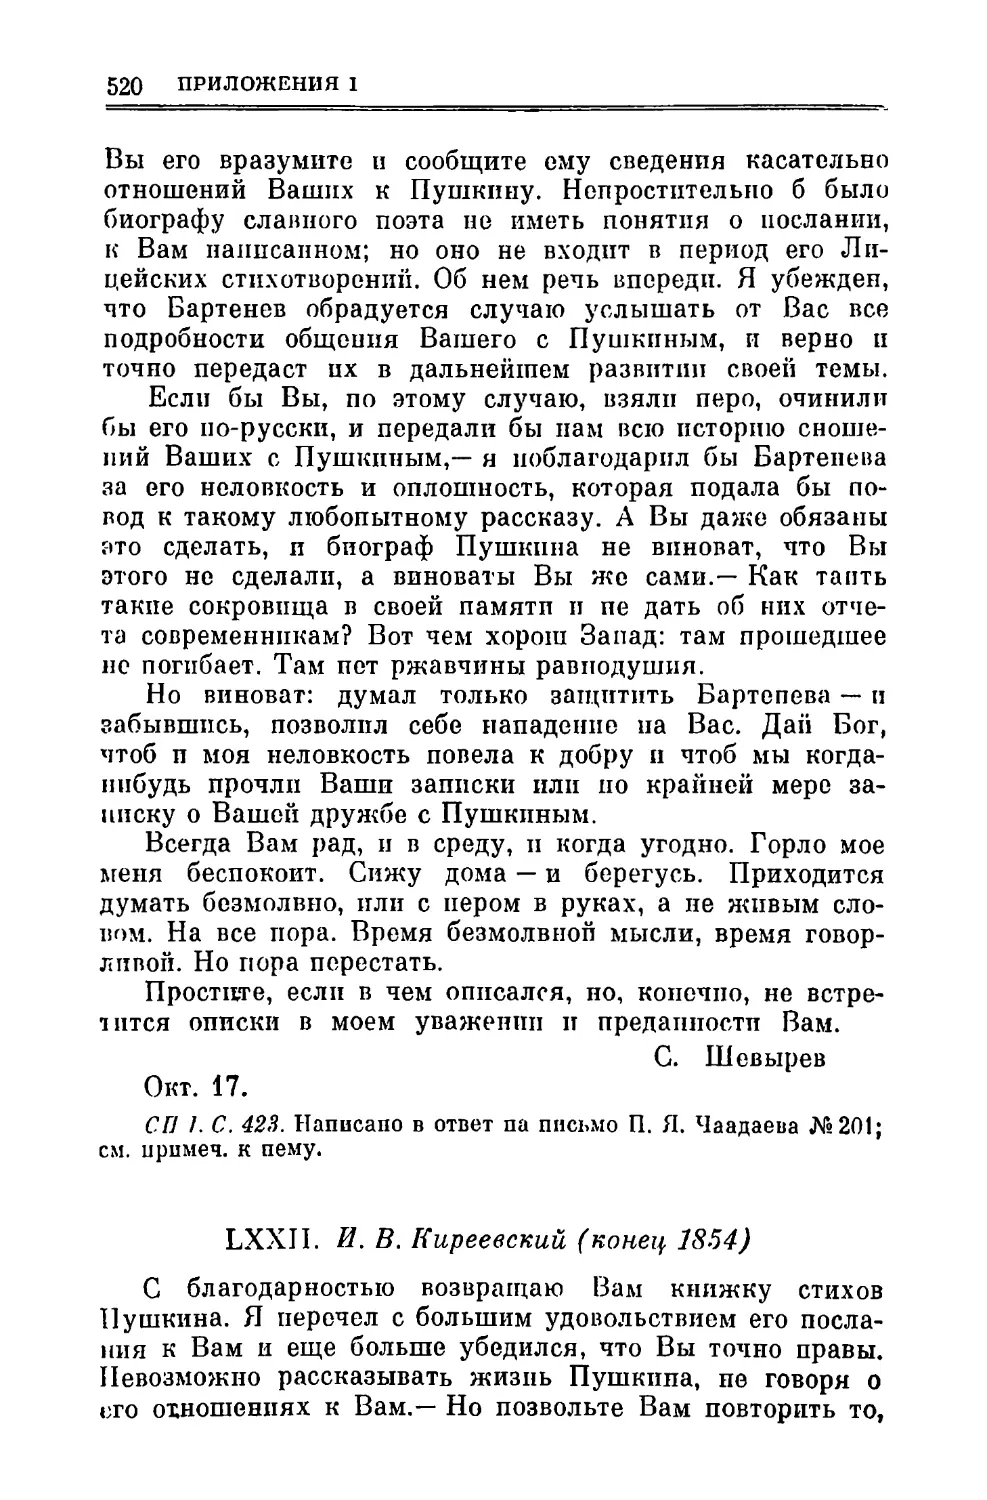 LXXII. Киреевский И.В. 1854